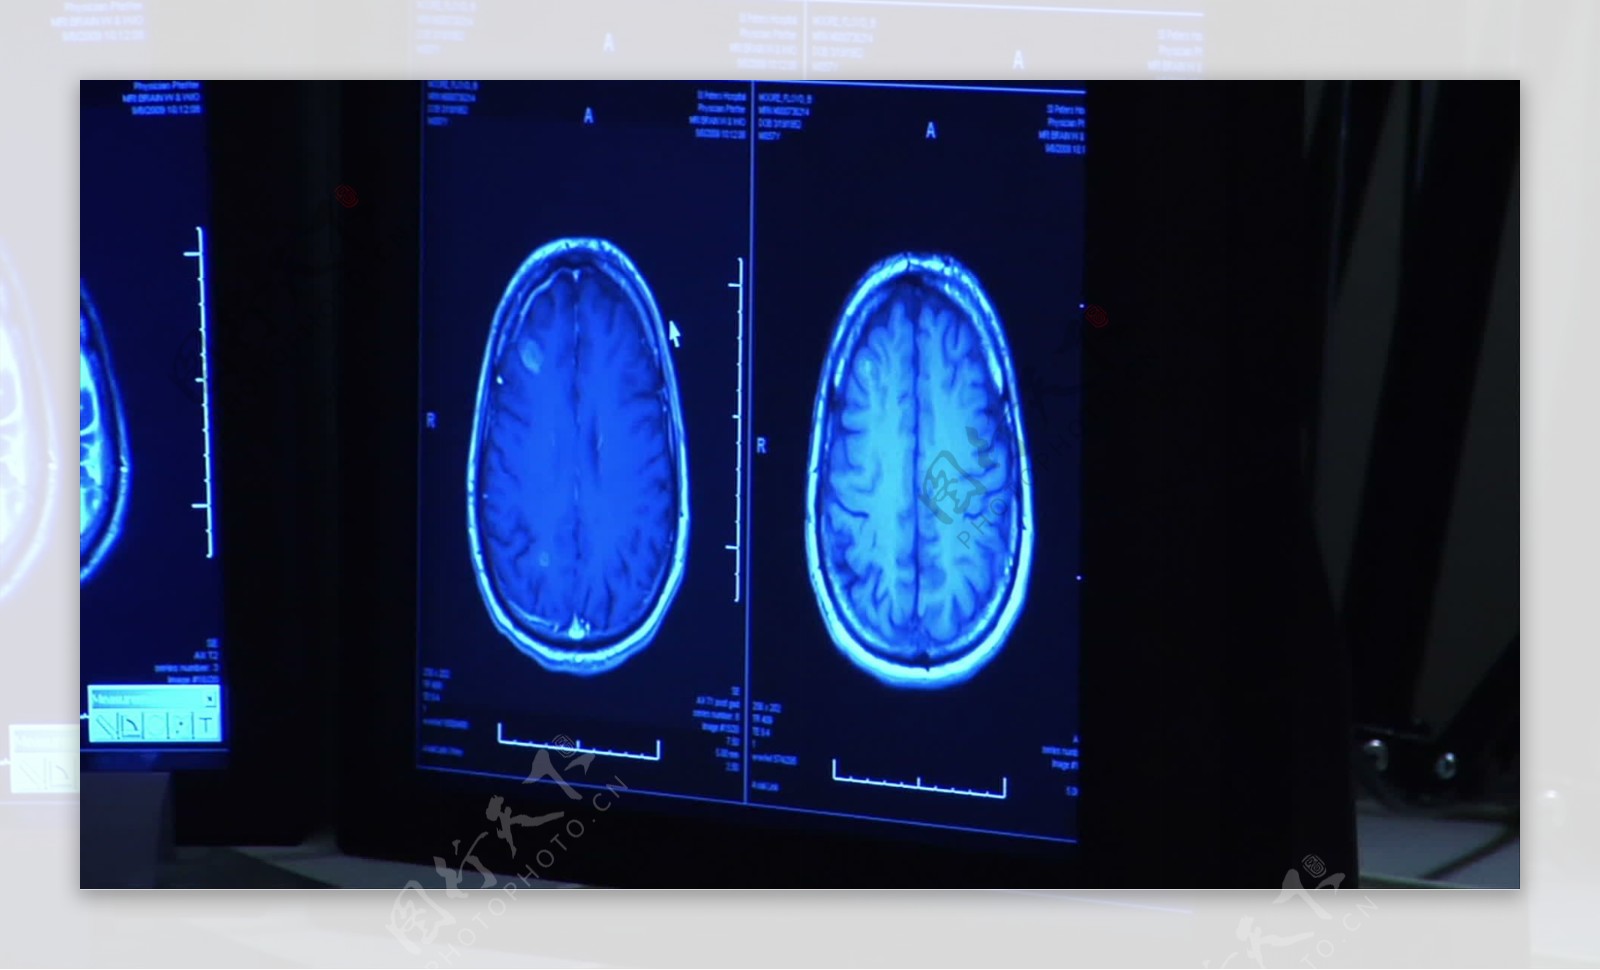 放射科医生看监控录像脑扫描的股票视频免费下载